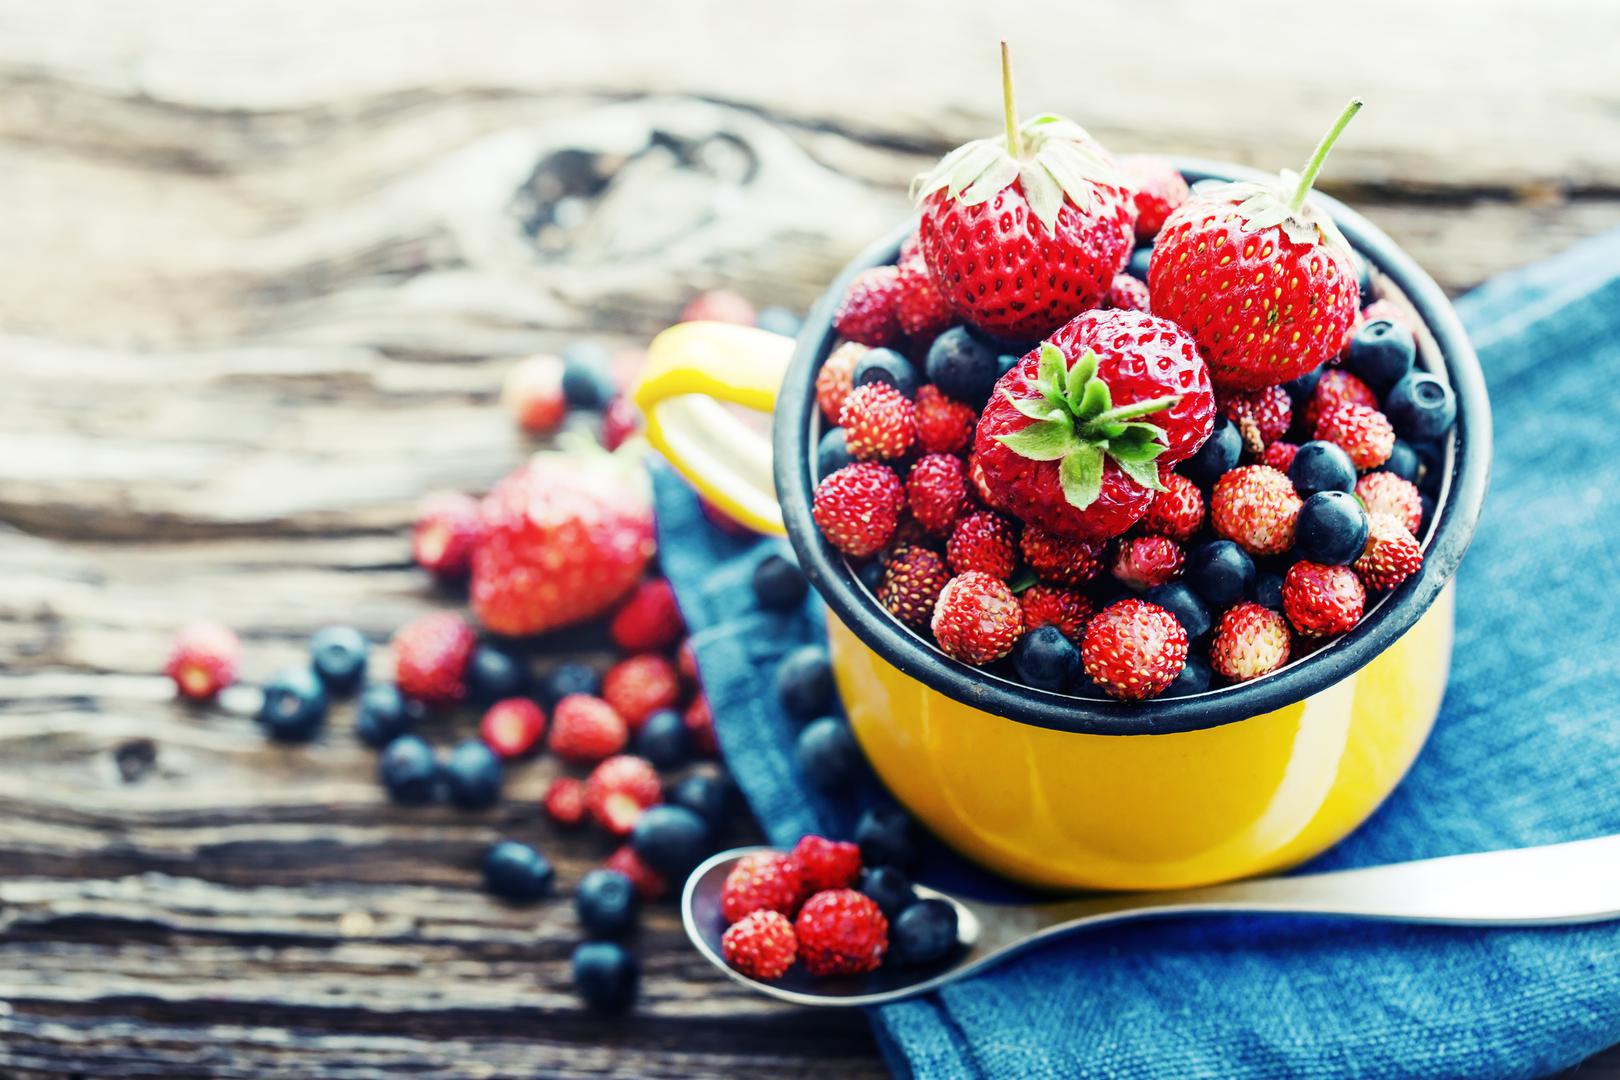 Bobičasto voće: Prema Shiueu, bobičasto voće obično ima nisko glikemijsko opterećenje, što znači da ne dovodi do visokih skokova šećera u krvi – to može pomoći u sprječavanju dijabetesa. Bobičasto voće ima visoku razinu antioksidansa, koji pomažu u obnavljanju stanica, uključujući stanice u srcu. Ove kvalitete čine bobičasto voće izvrsnim izborom za desert kada žudite za nečim slatkim.